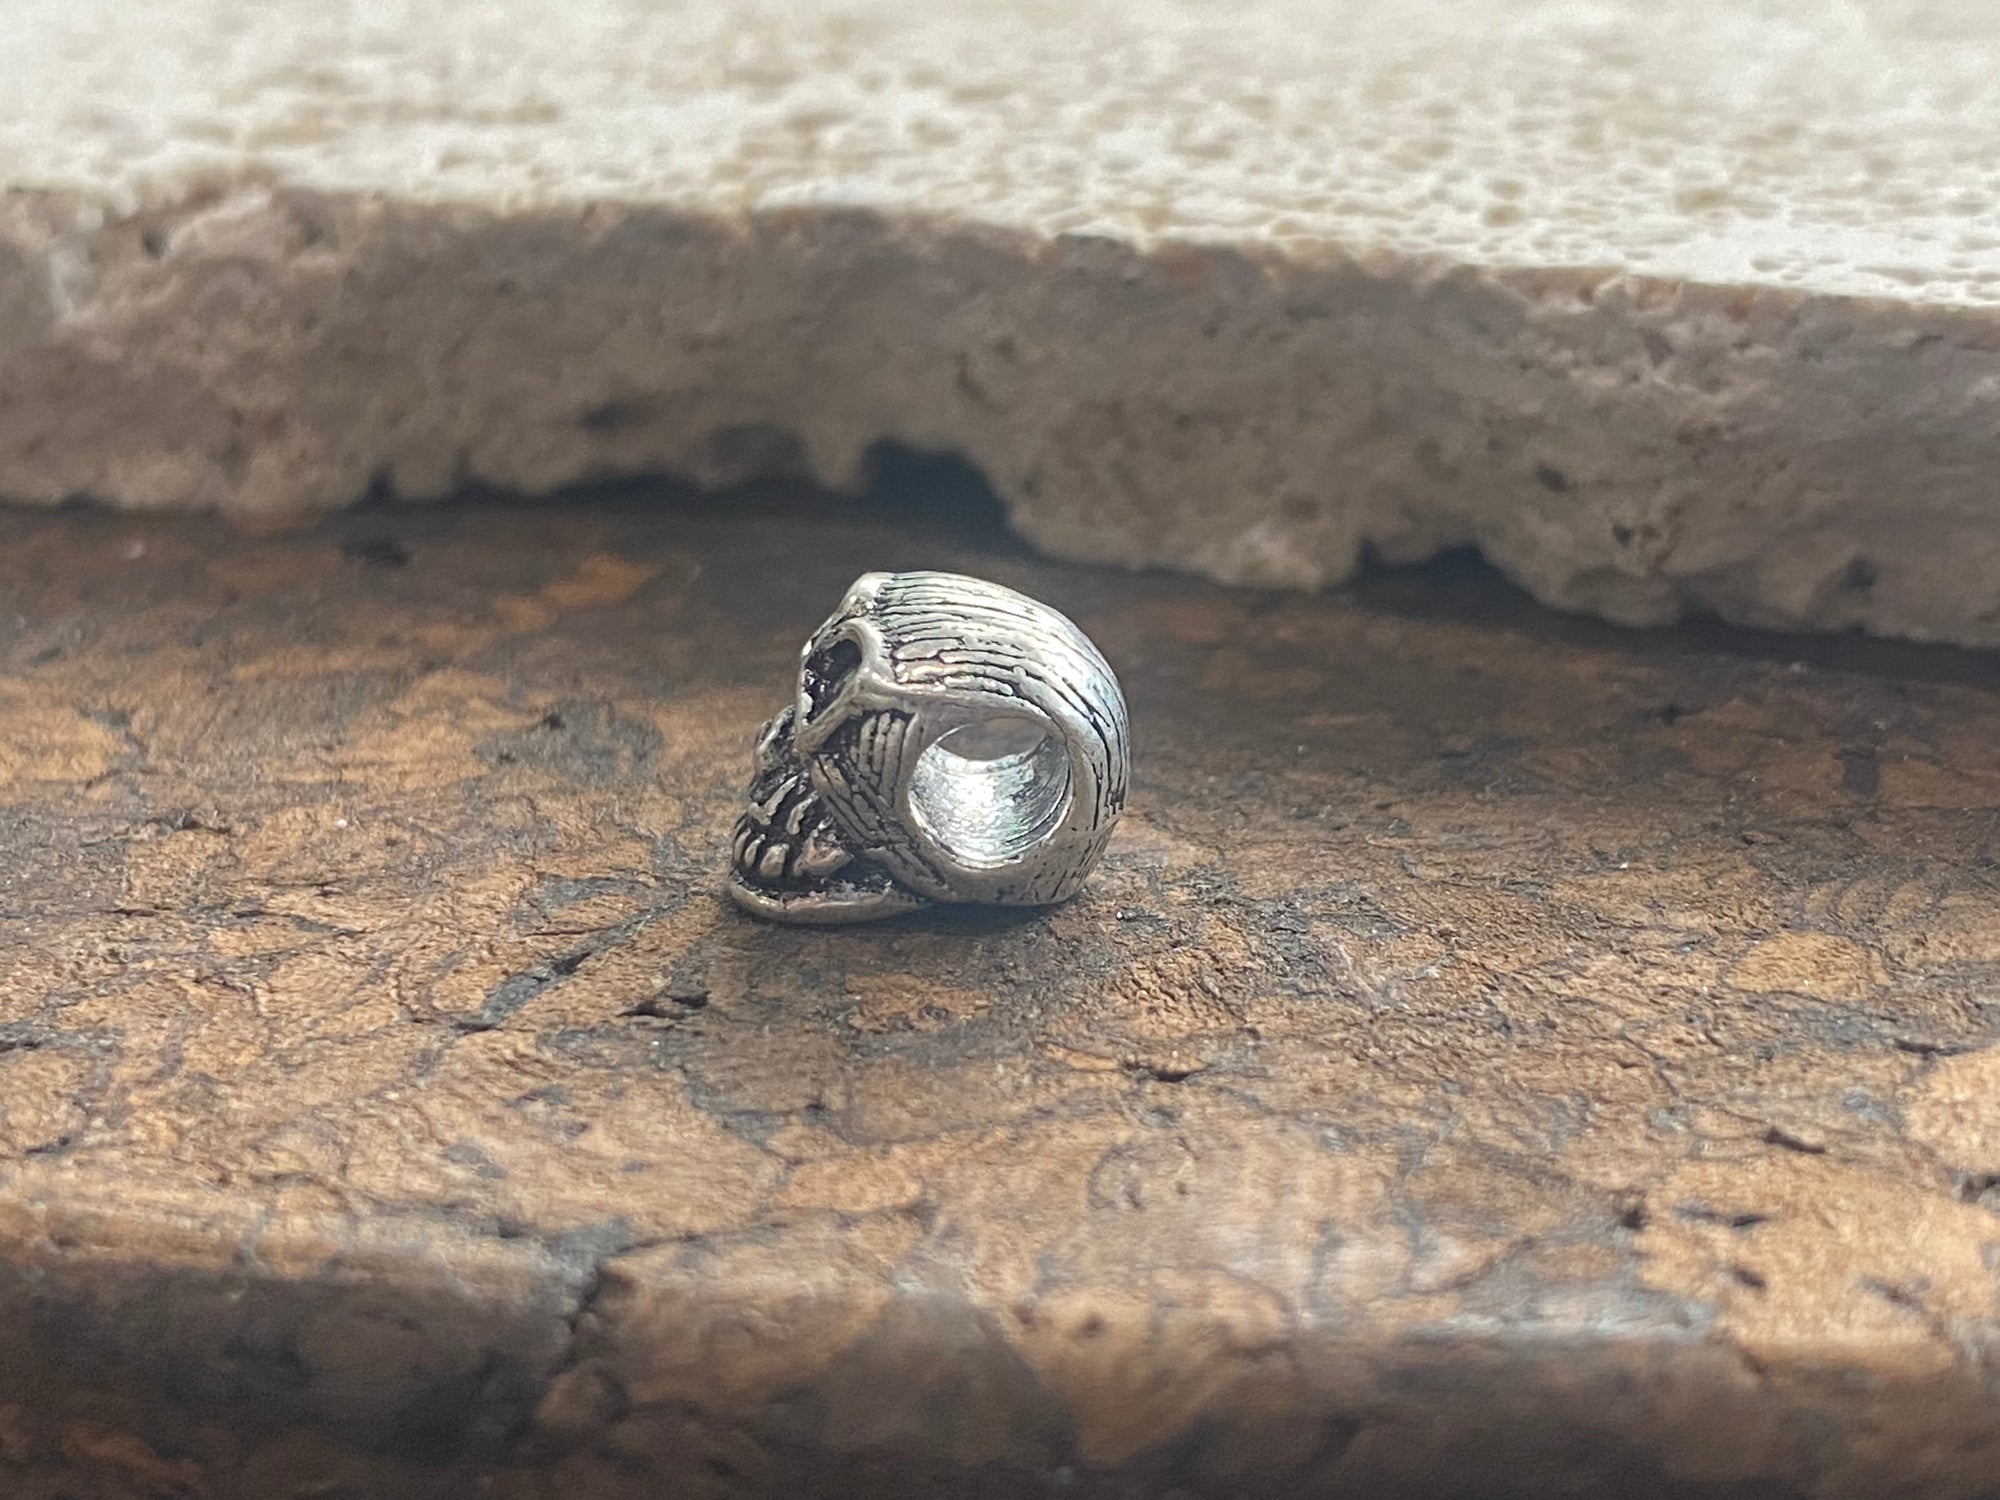 Sterling silver skull charm or pendant. Length 1 cm